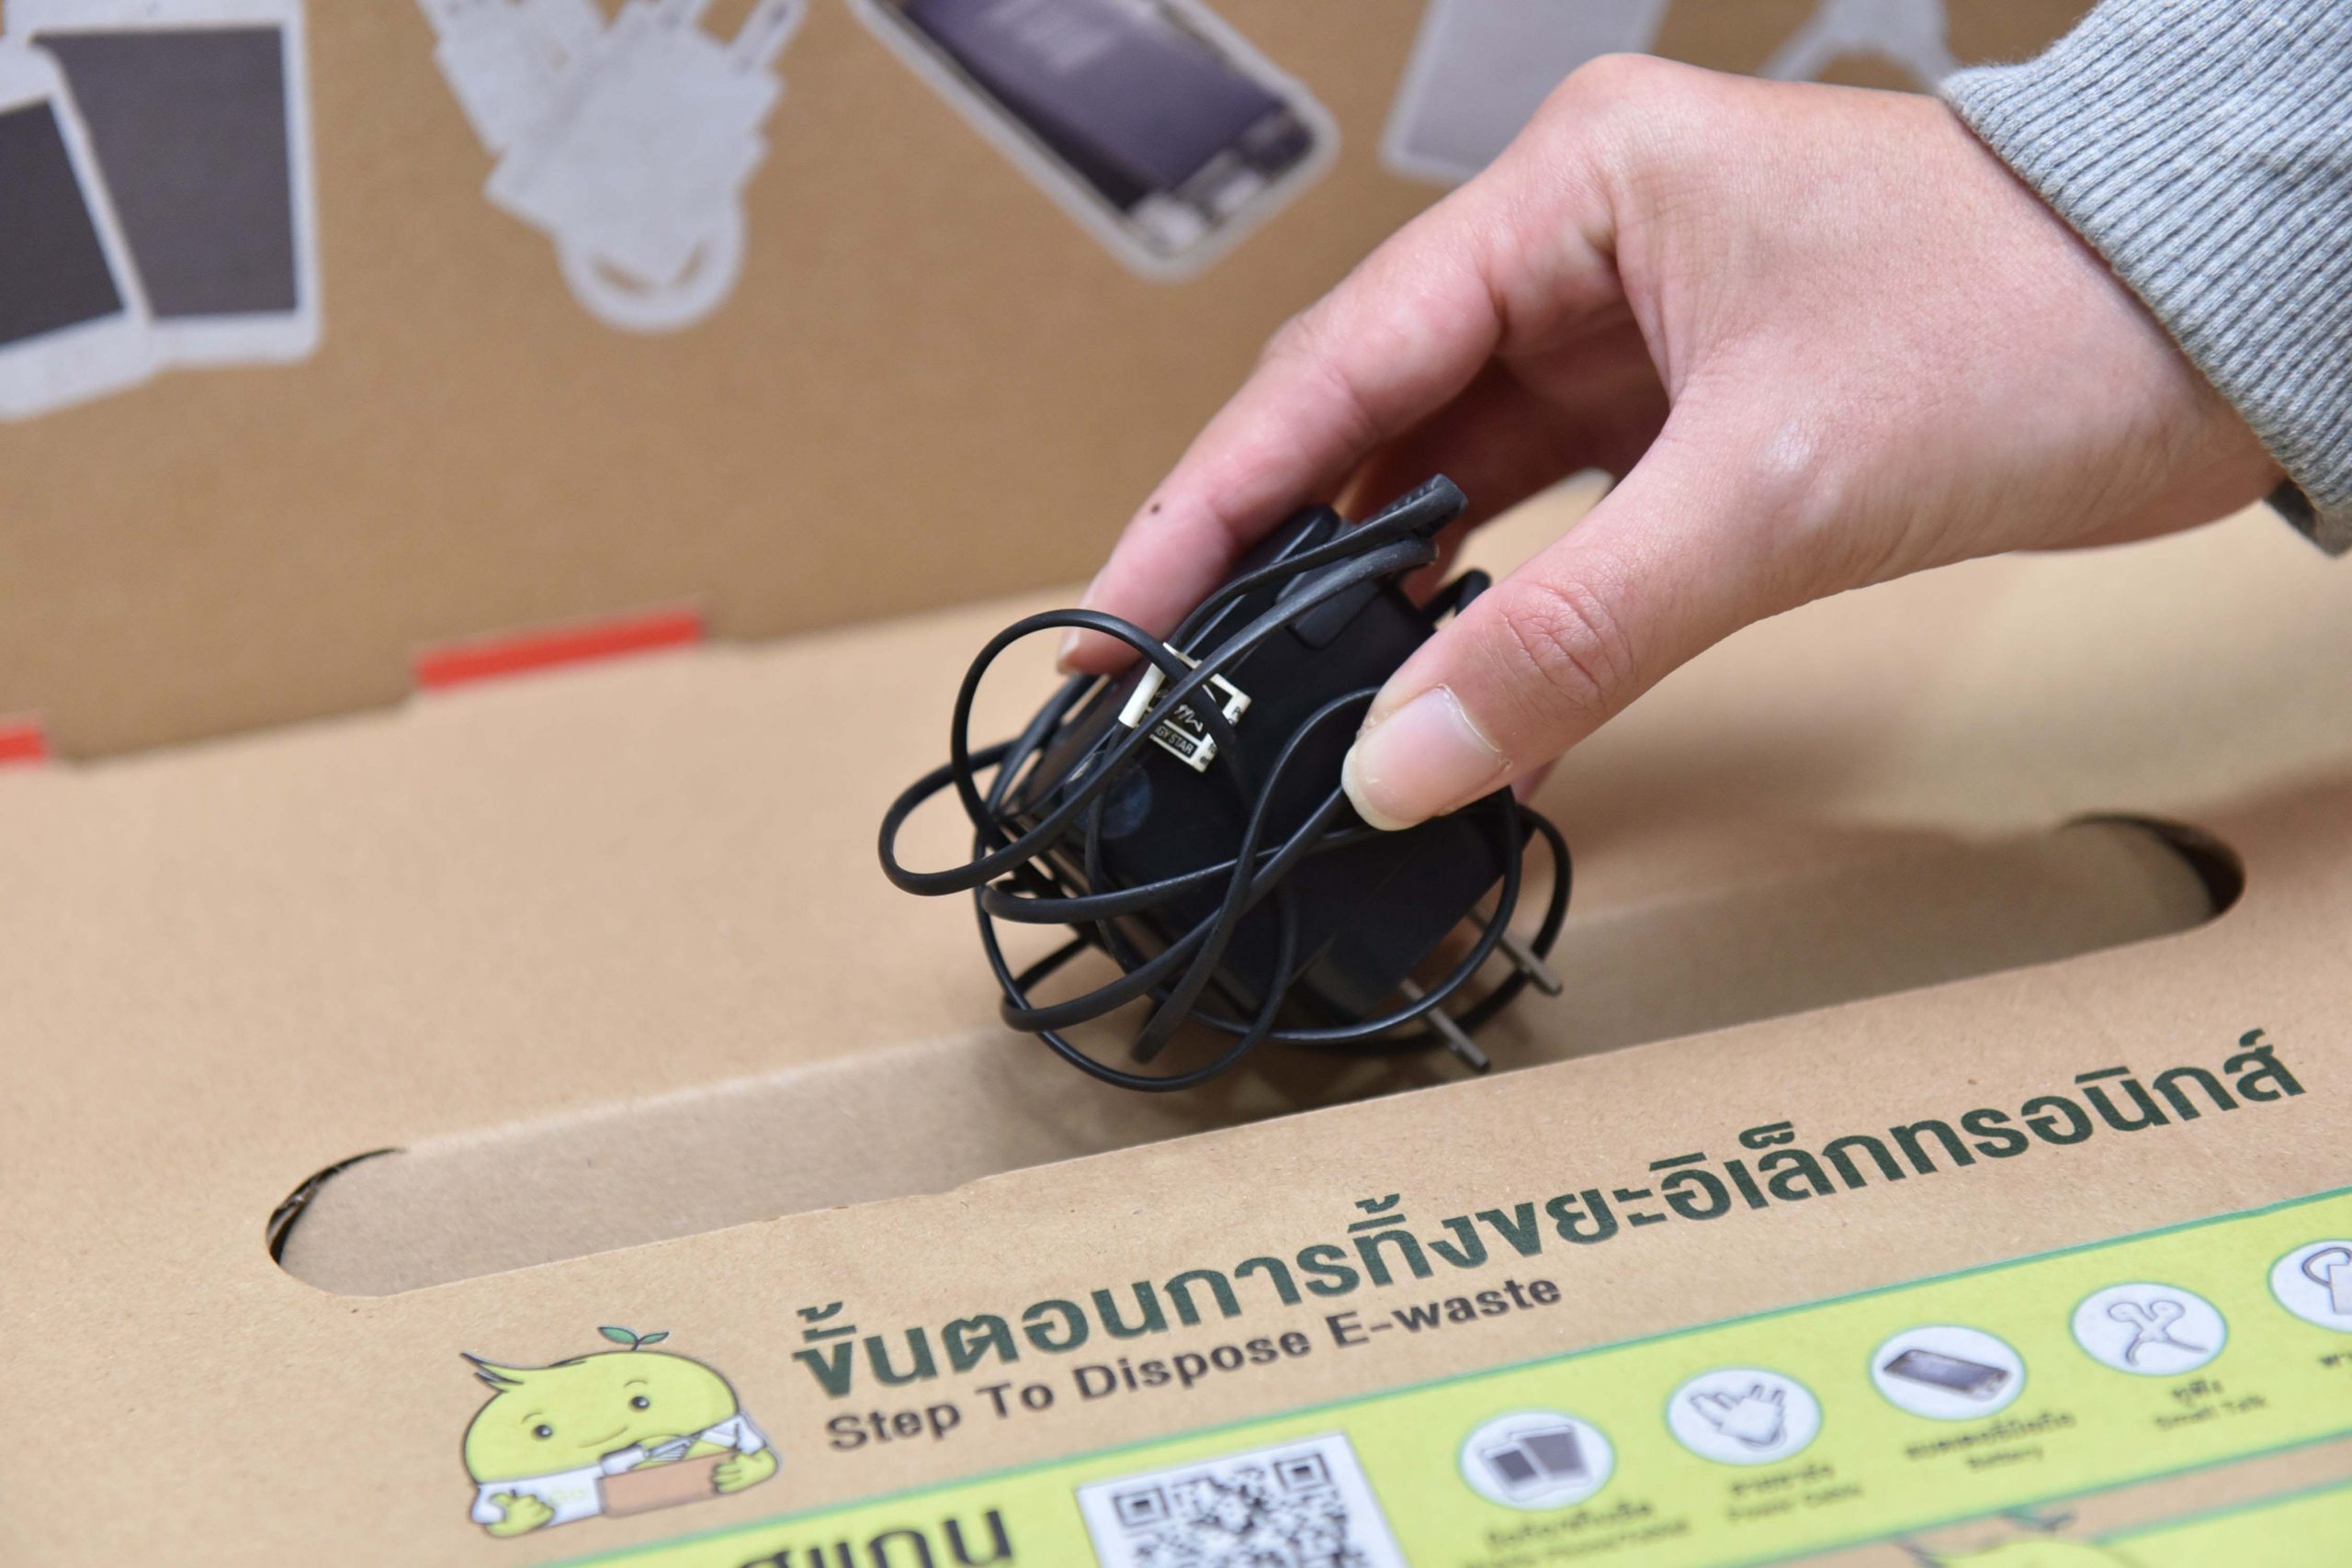 เอไอเอส จับมือ ภาคีเครือข่ายความยั่งยืน TRBN โดย 9 บริษัทจดทะเบียน ดึงพลังพนักงานกว่า 20,000 คน ร่วมปฏิบัติการ คนไทยไร้ E-Waste